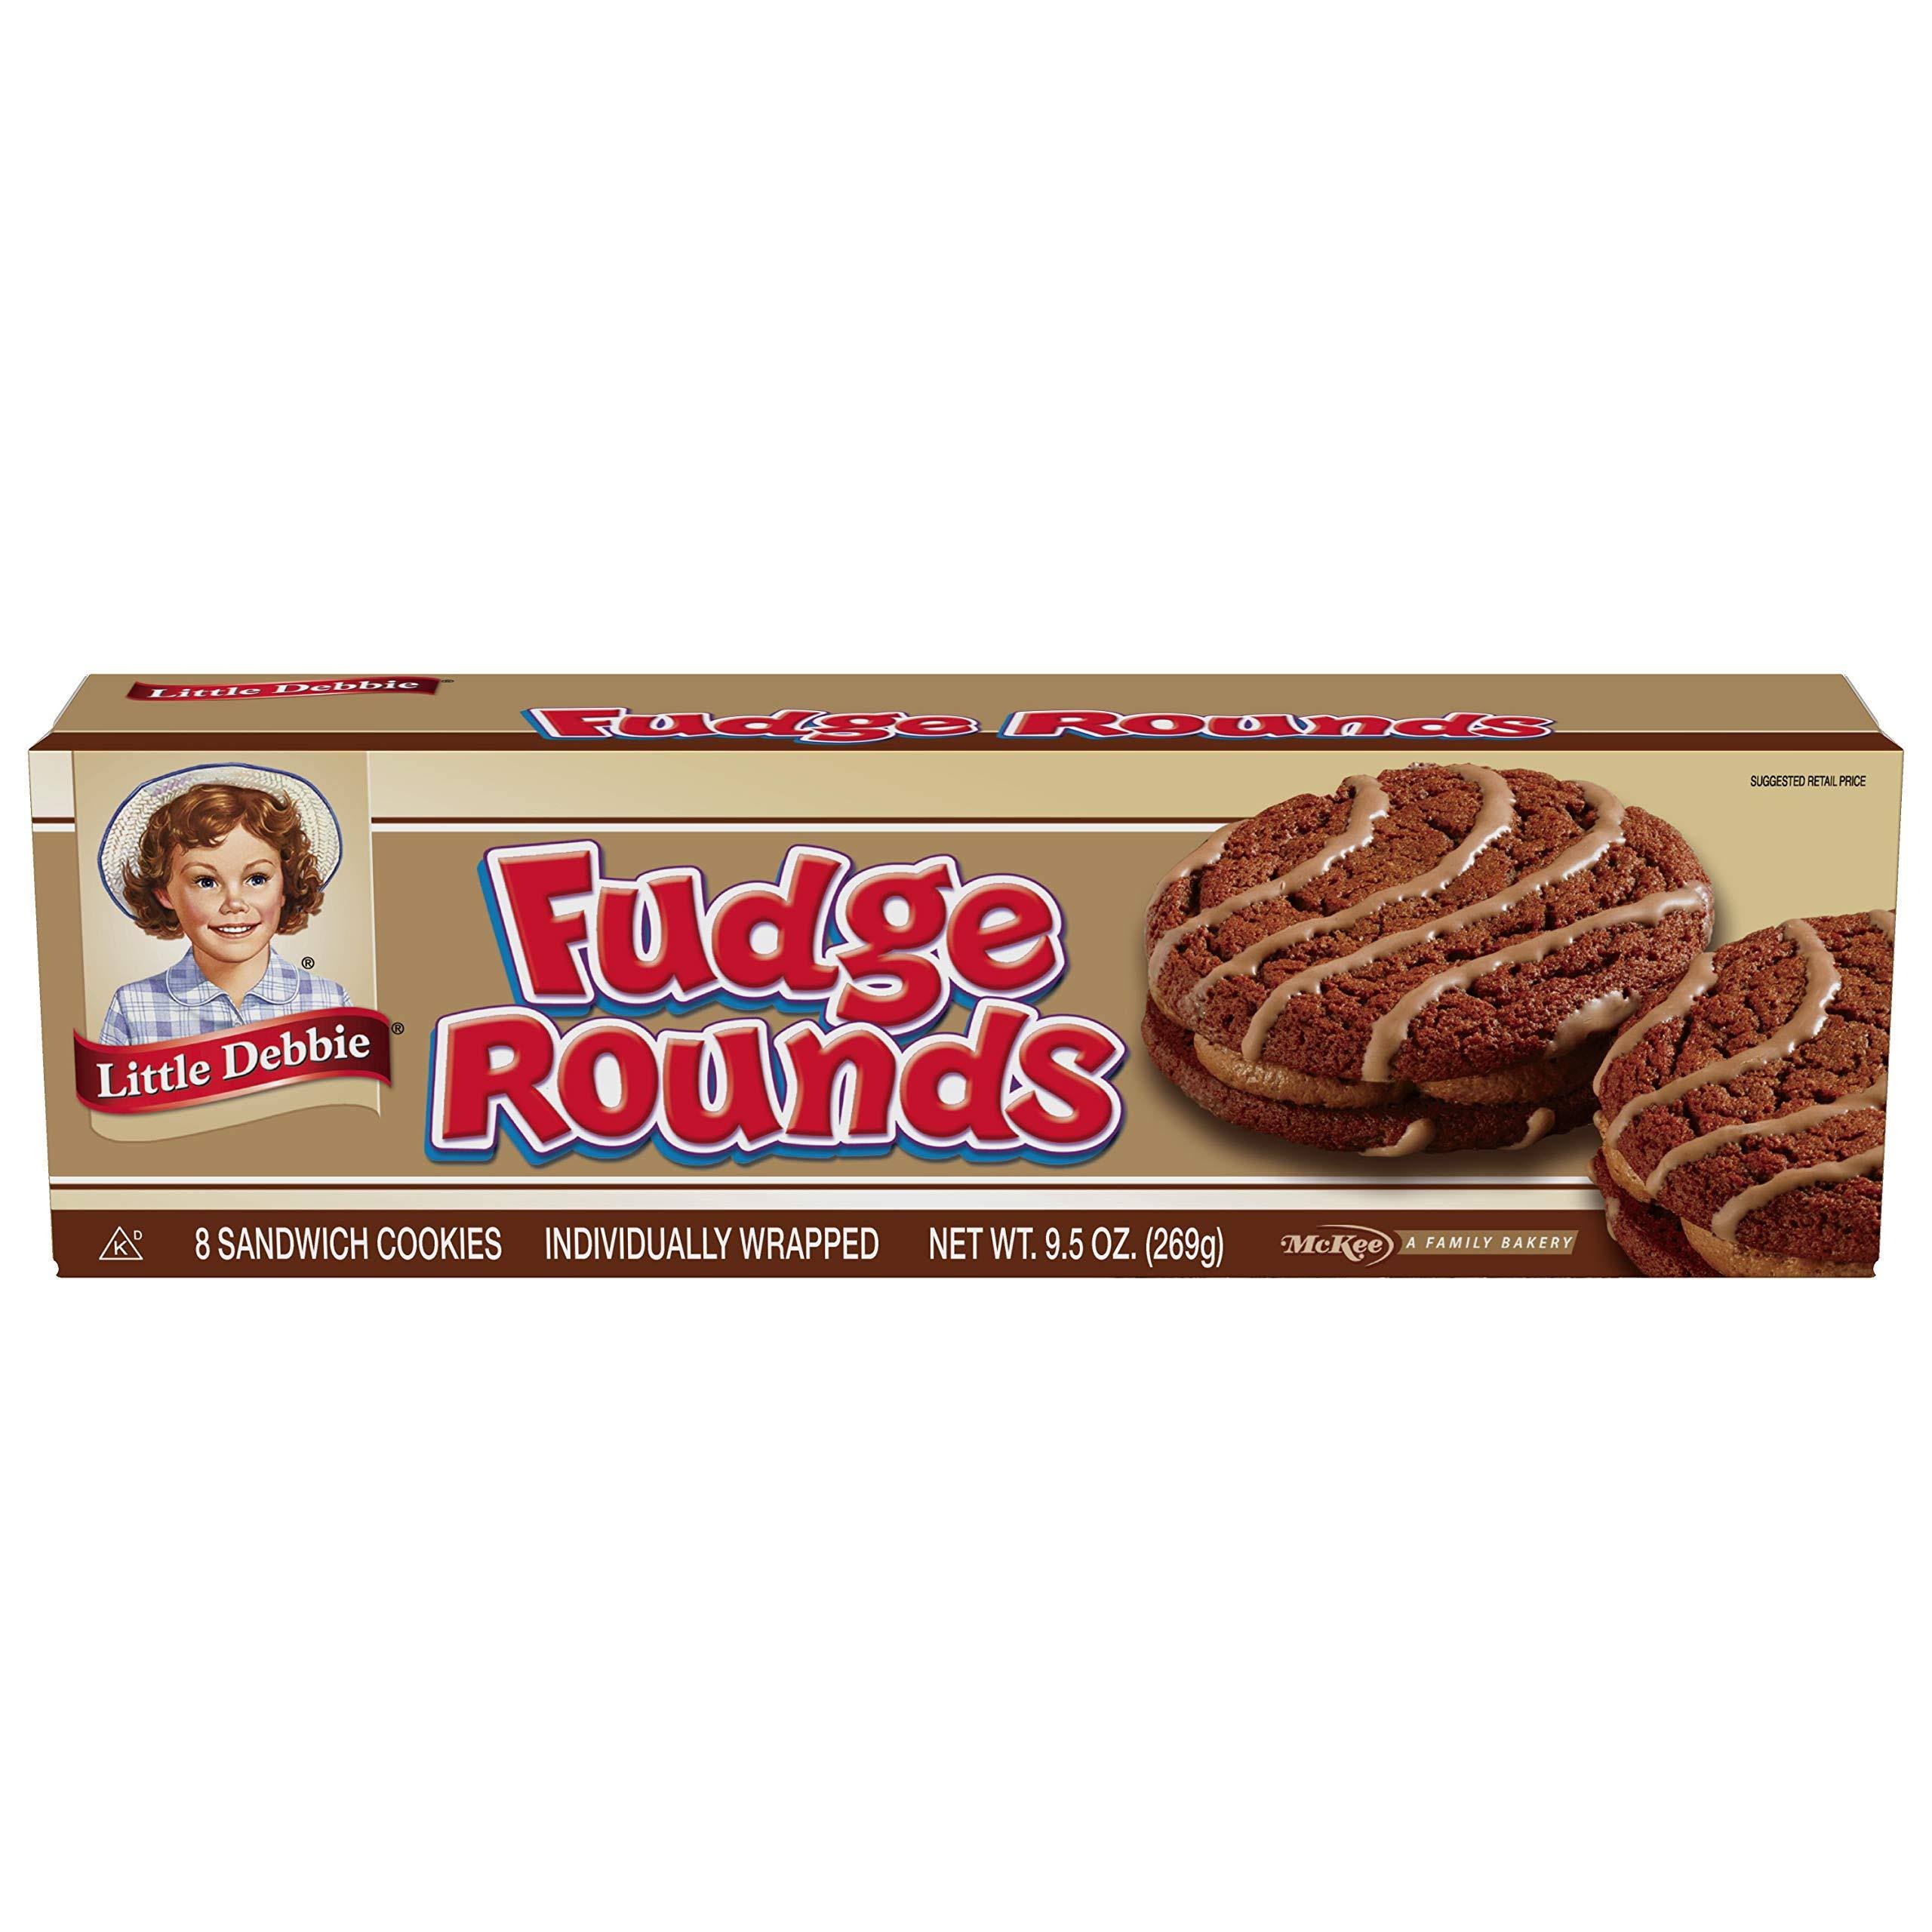 Little Debbie Fudge Rounds Sandwich Cookies - 8ct, 9.5oz